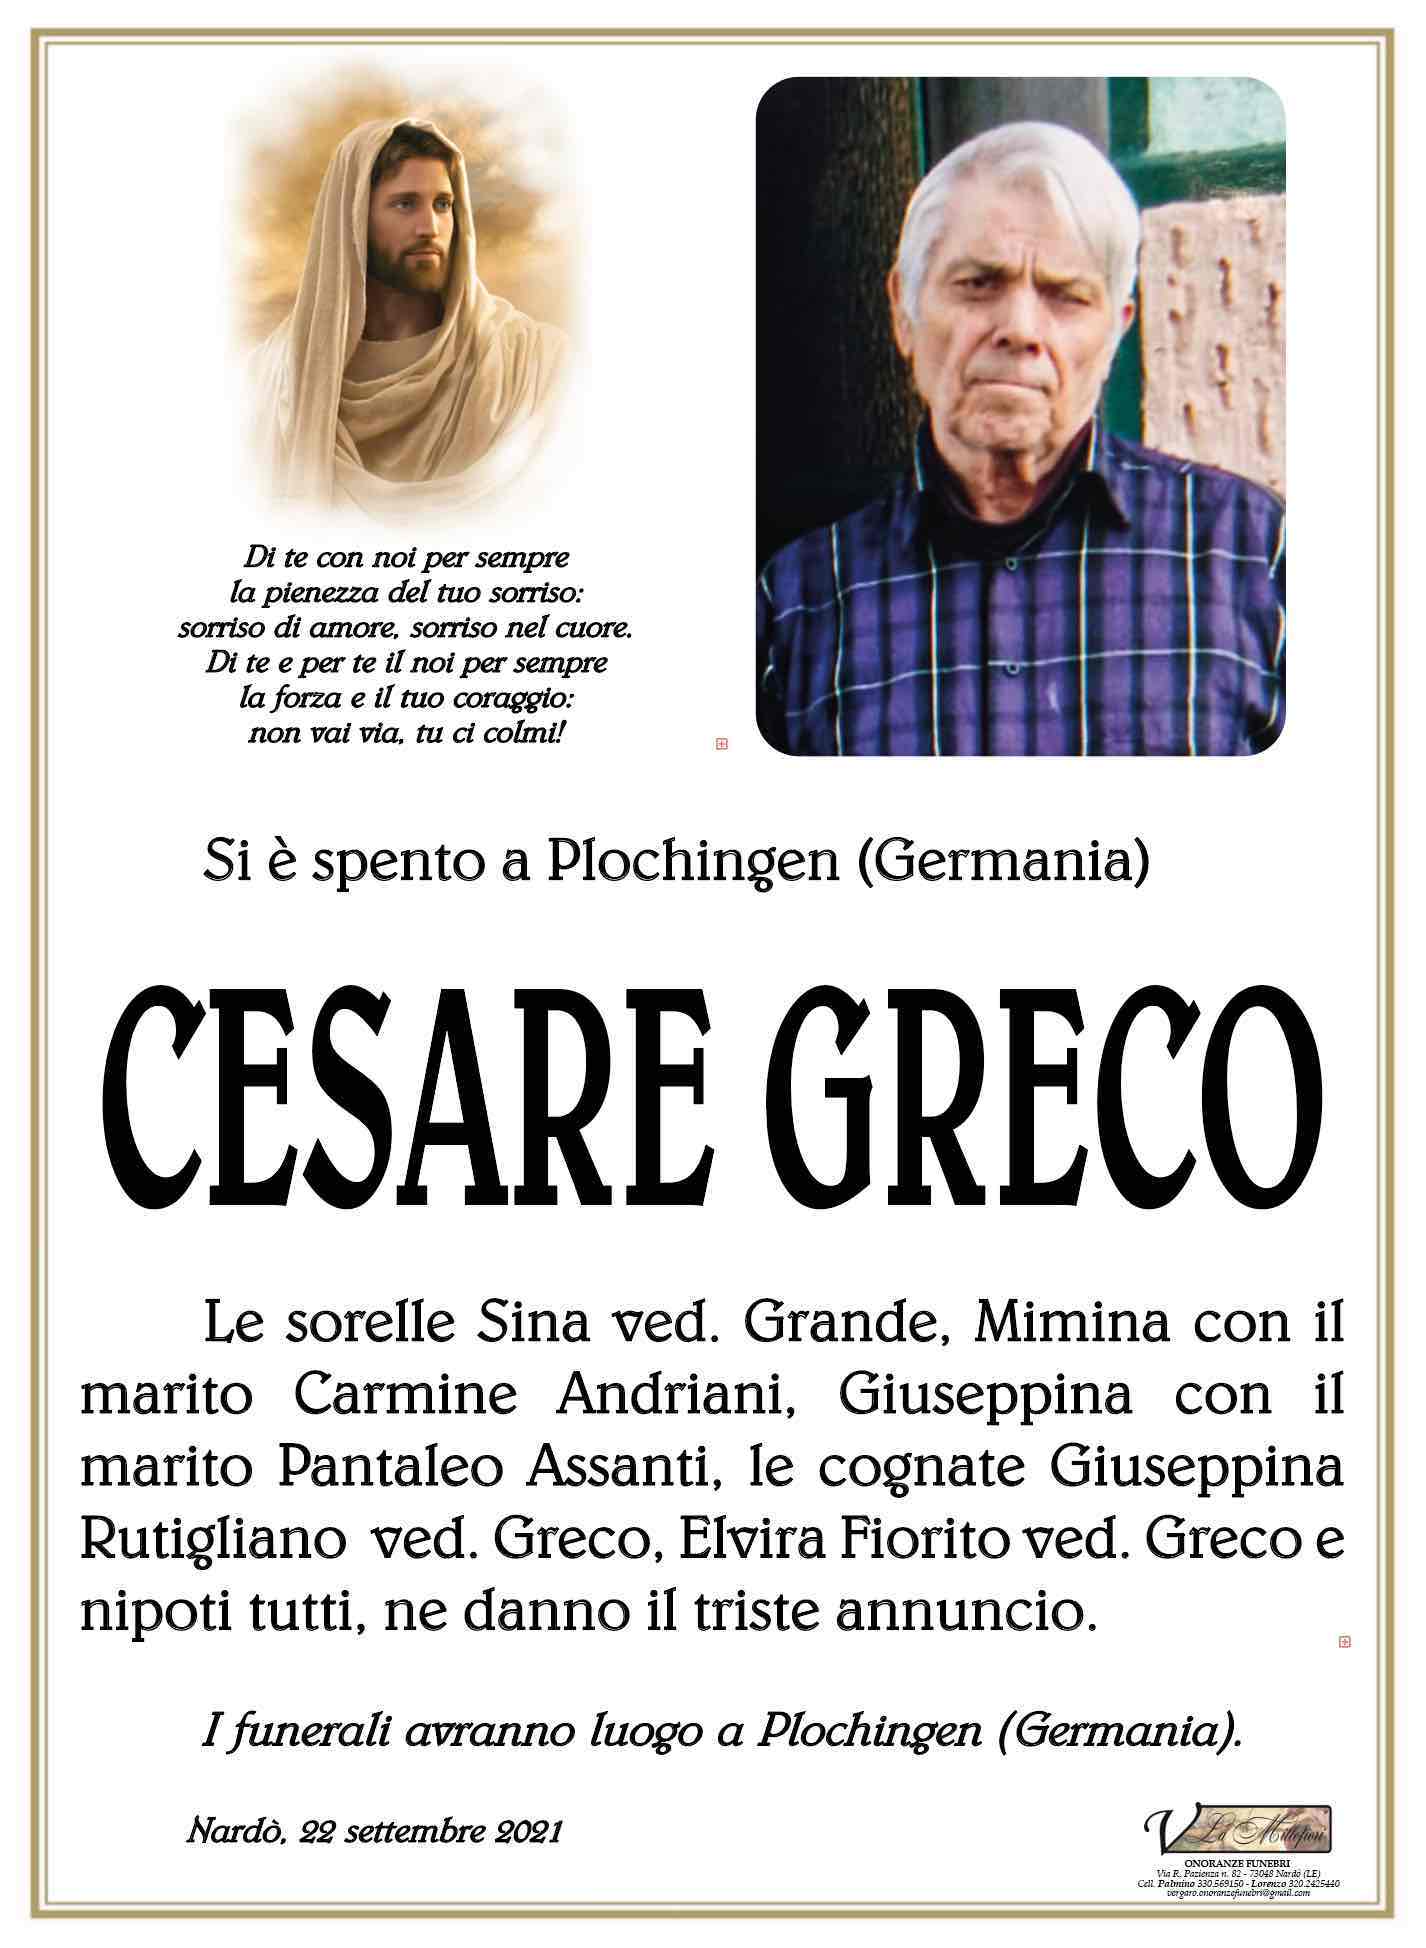 Cesare Greco